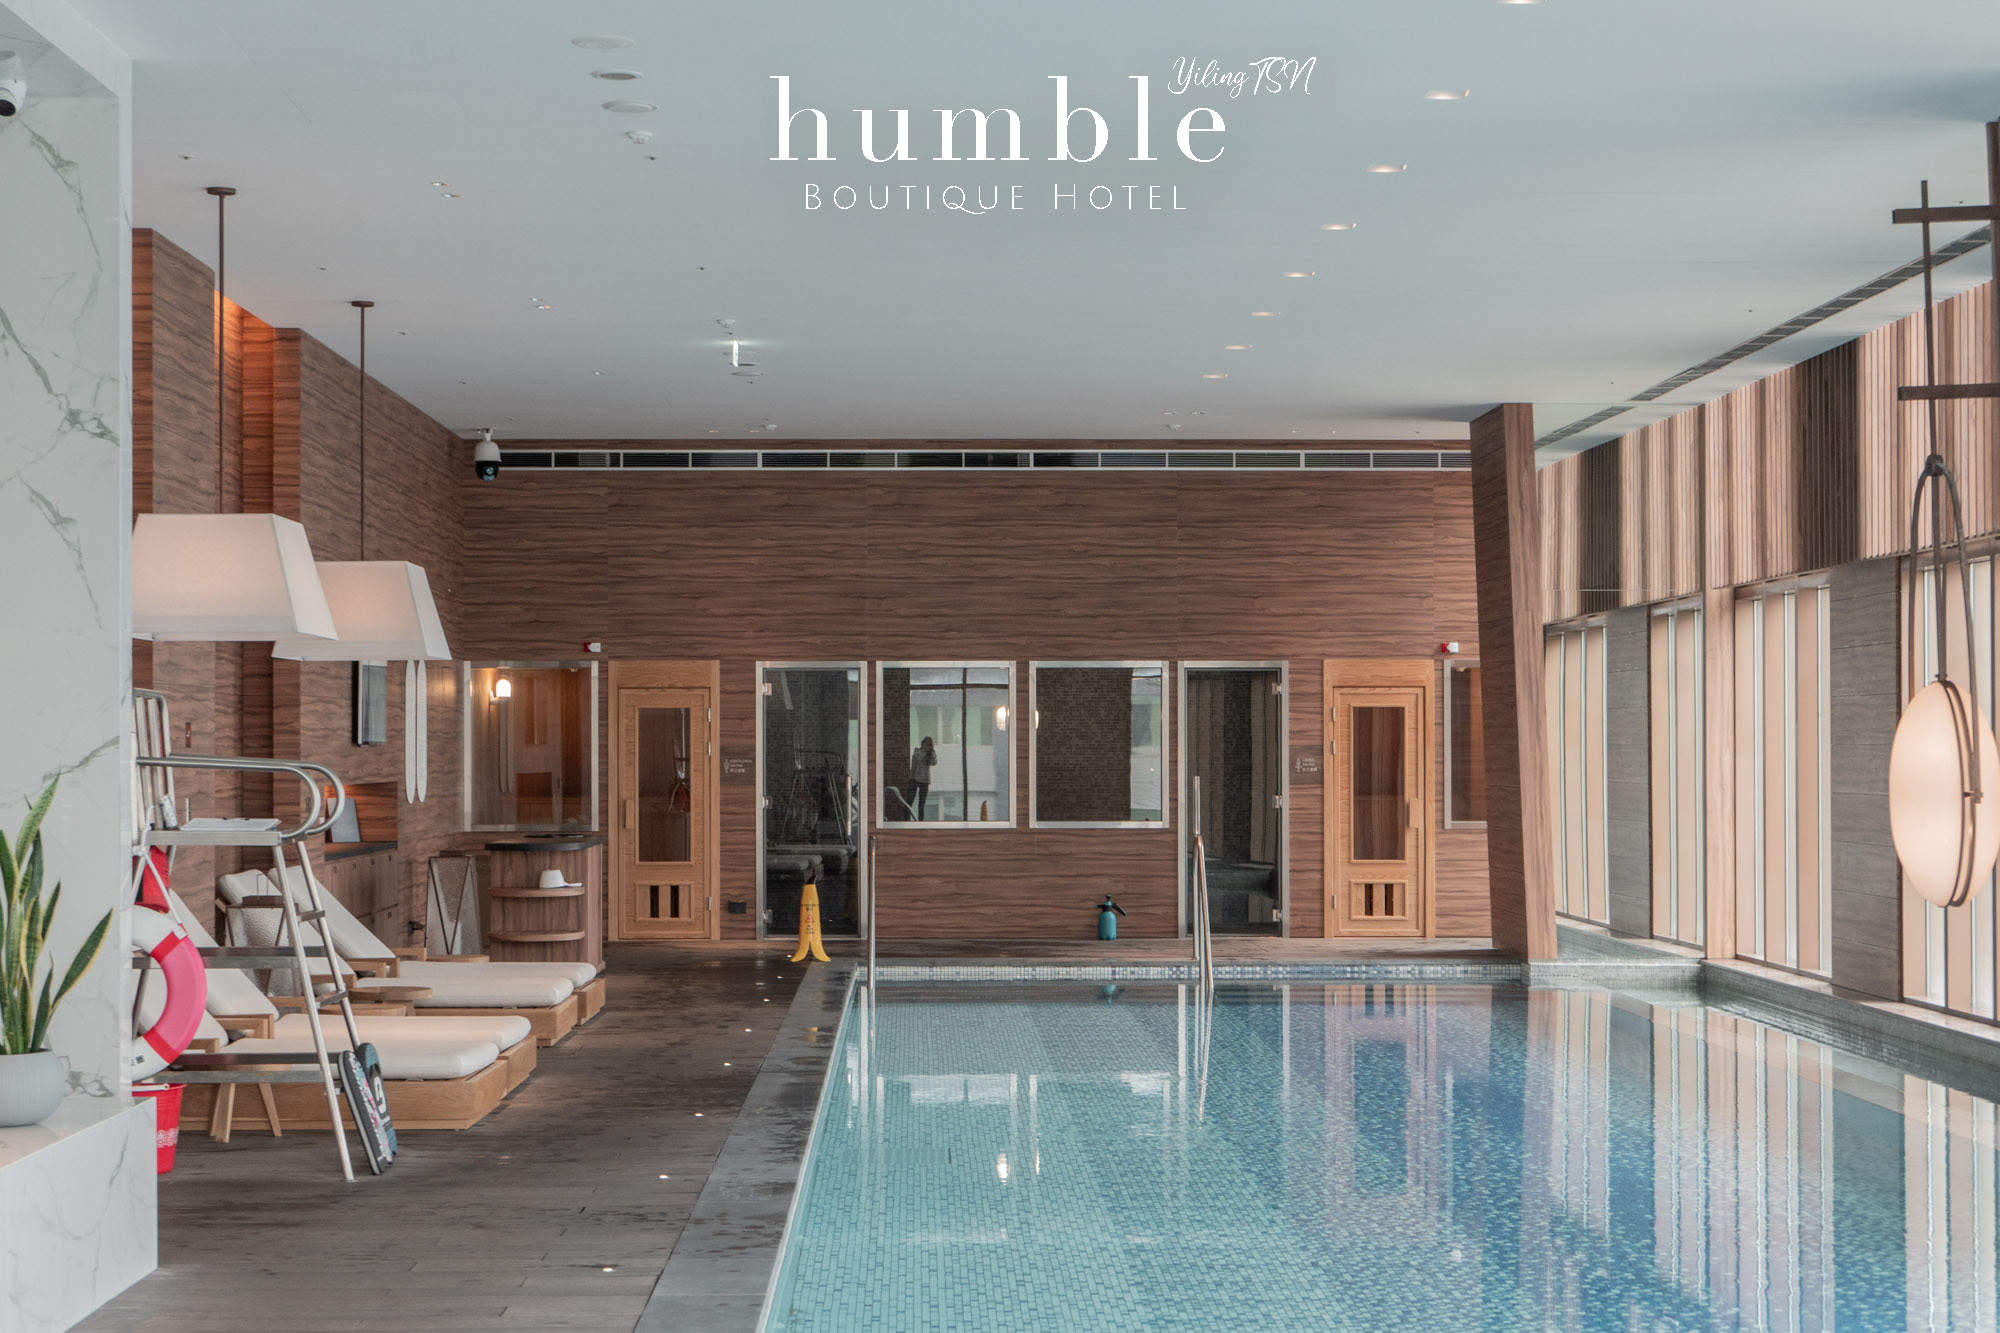 台北寒居酒店 Humble Boutique Hotel：繁忙鬧區雅緻清幽世外桃源，如同回家般自在享受